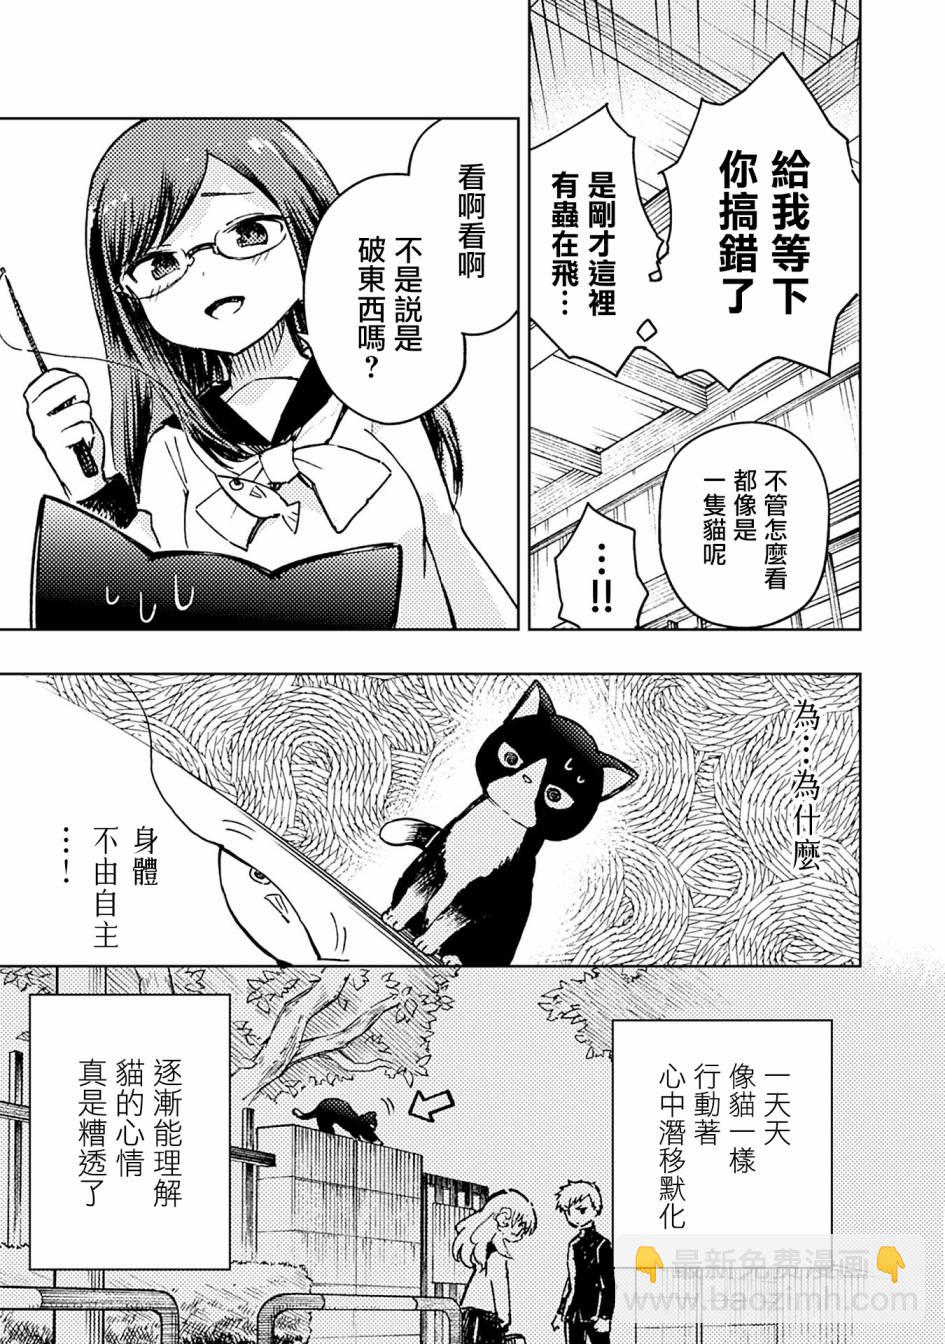 十三機兵防衛圈 漫畫集 STAR - 藥師寺惠的叛逆 - 1